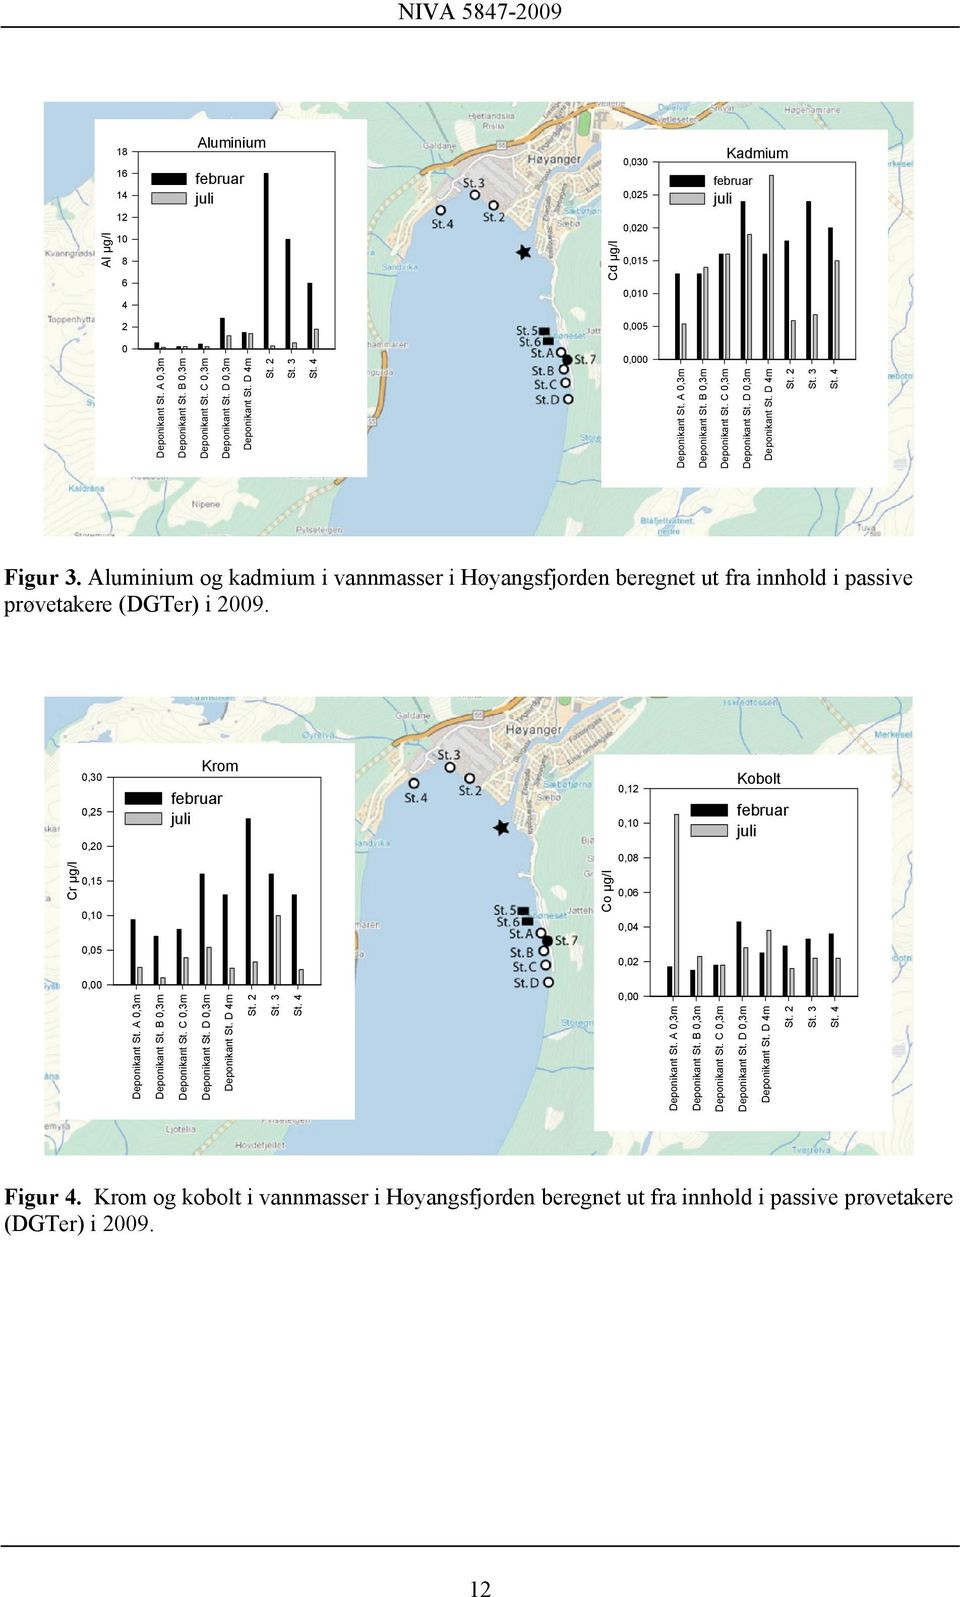 Aluminium og kadmium i vannmasser i Høyangsfjorden beregnet ut fra innhold i passive prøvetakere (DGTer) i 2009.